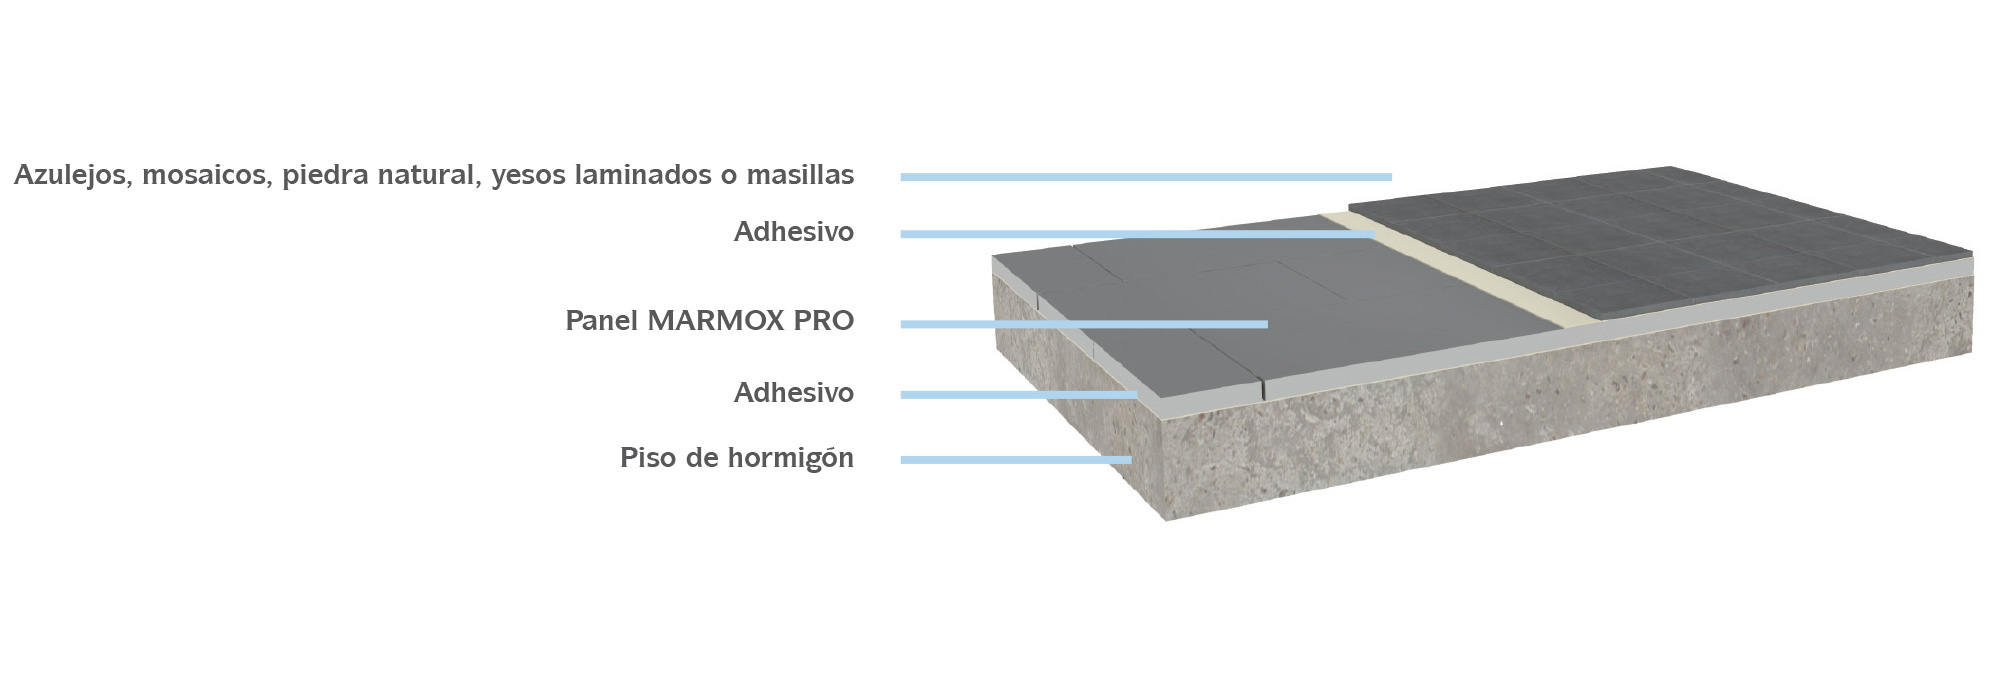 Instalación de Panel MARMOX PRO en suelos de hormigón